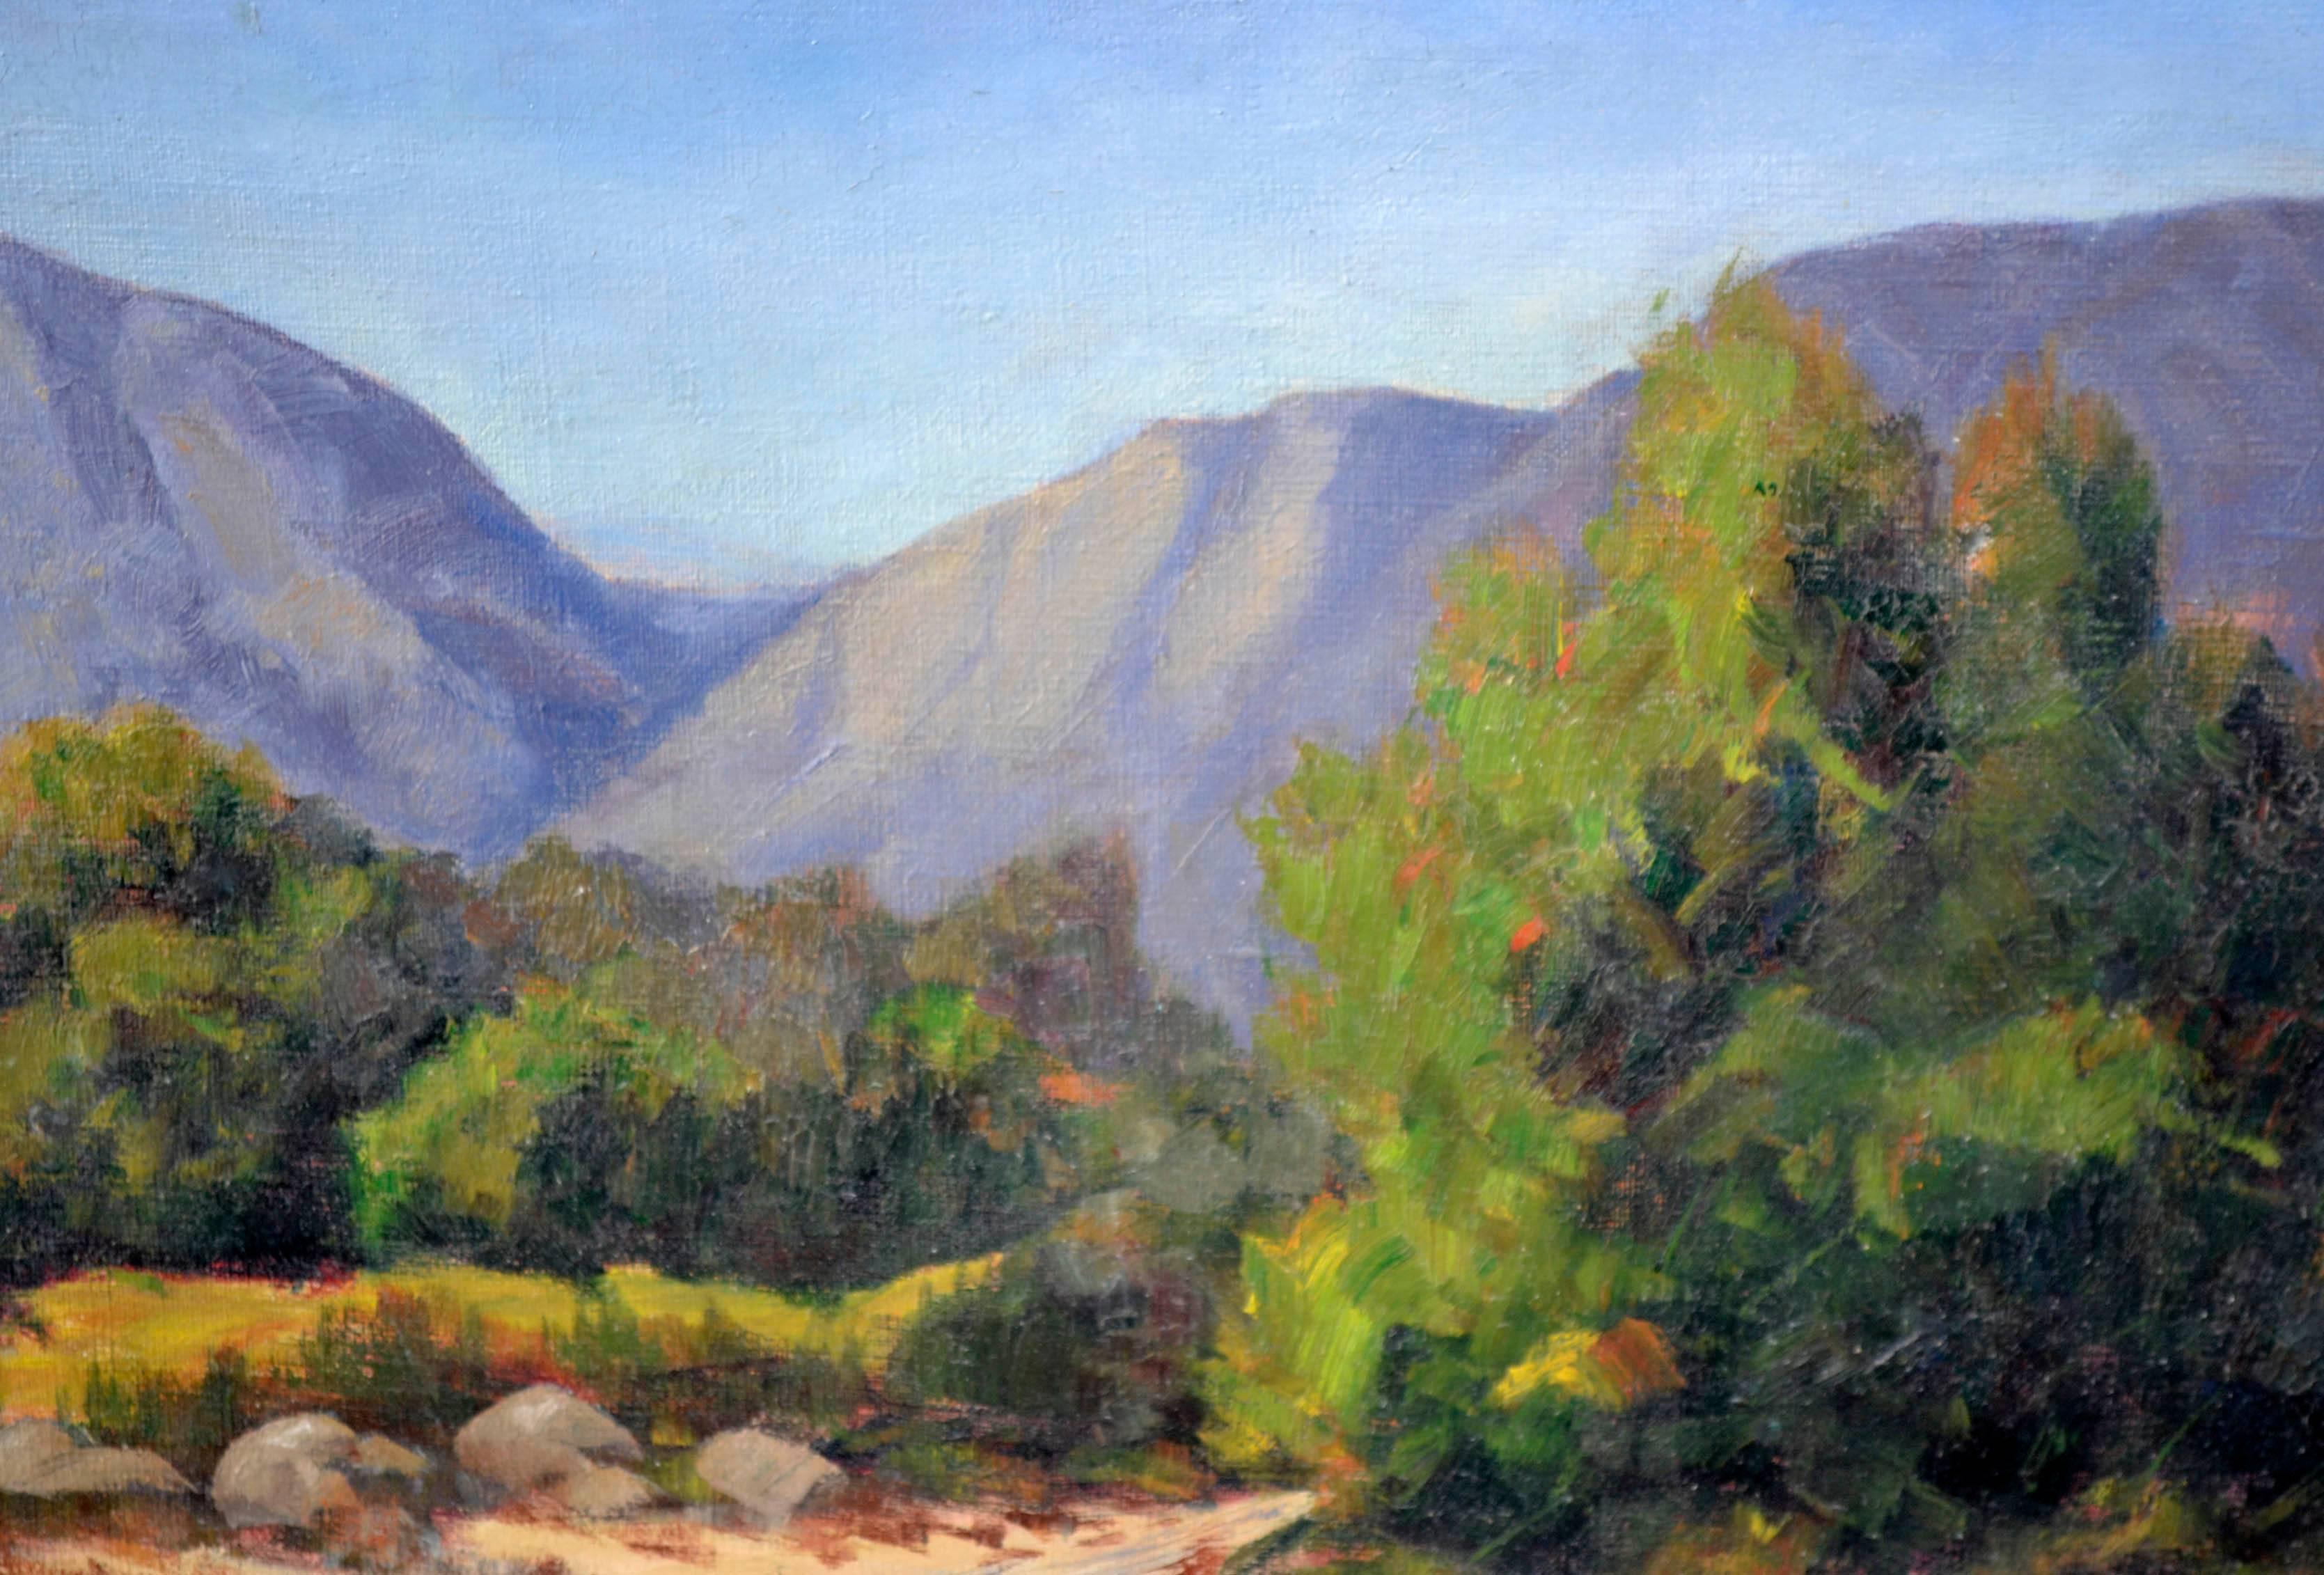 California Mountain Trail-Landschaft aus den 1930er Jahren  (Amerikanischer Impressionismus), Painting, von Sidney L. Brock